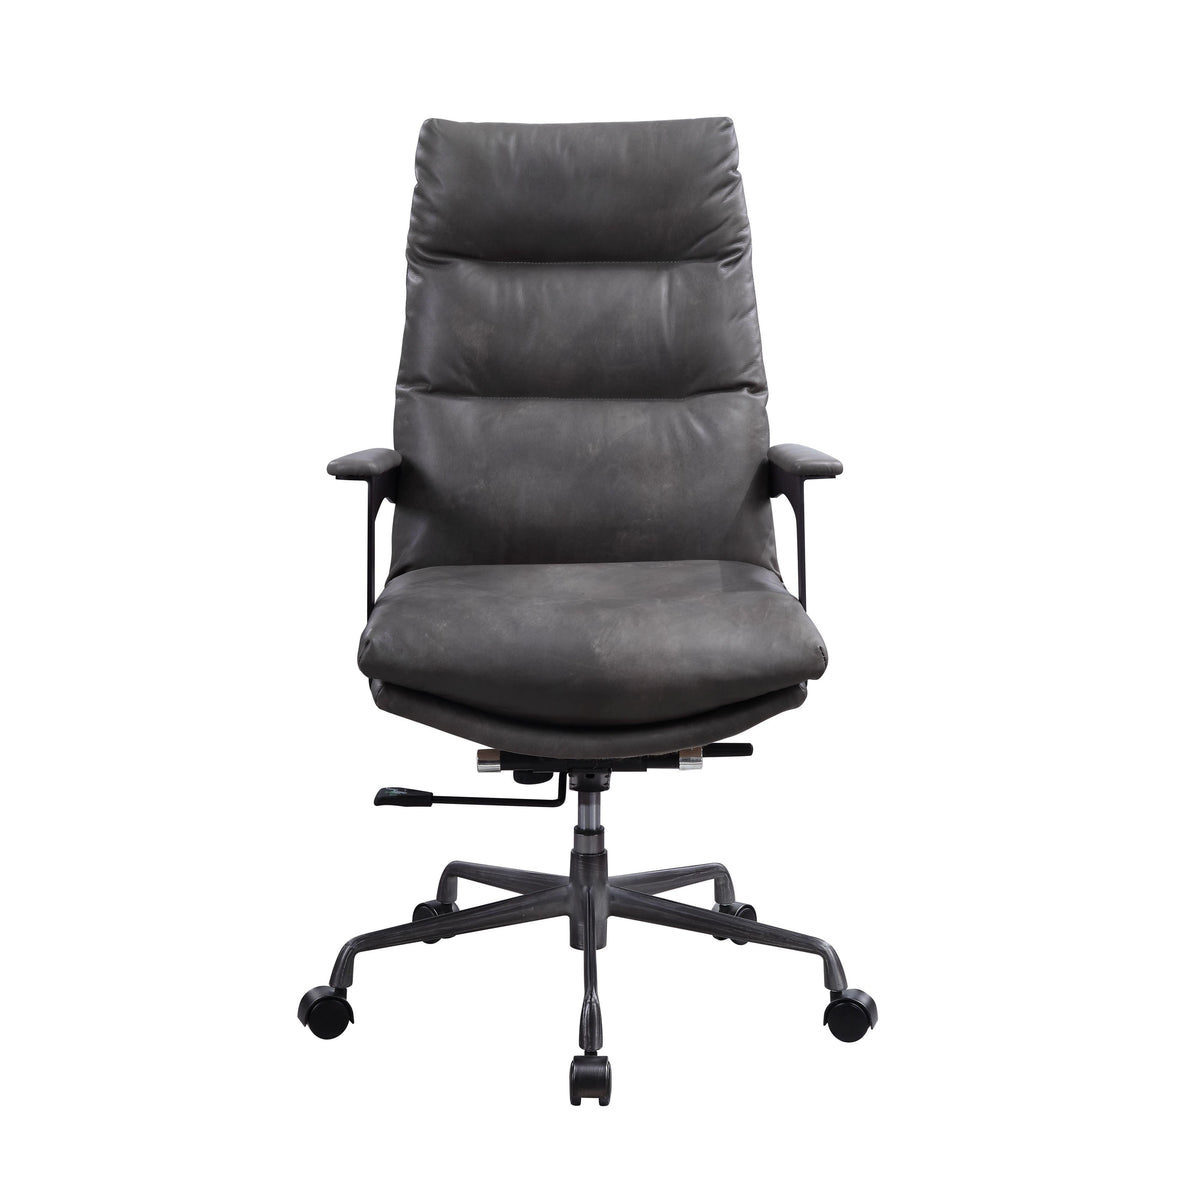 Acme Furniture Crursa 93170 Office Chair